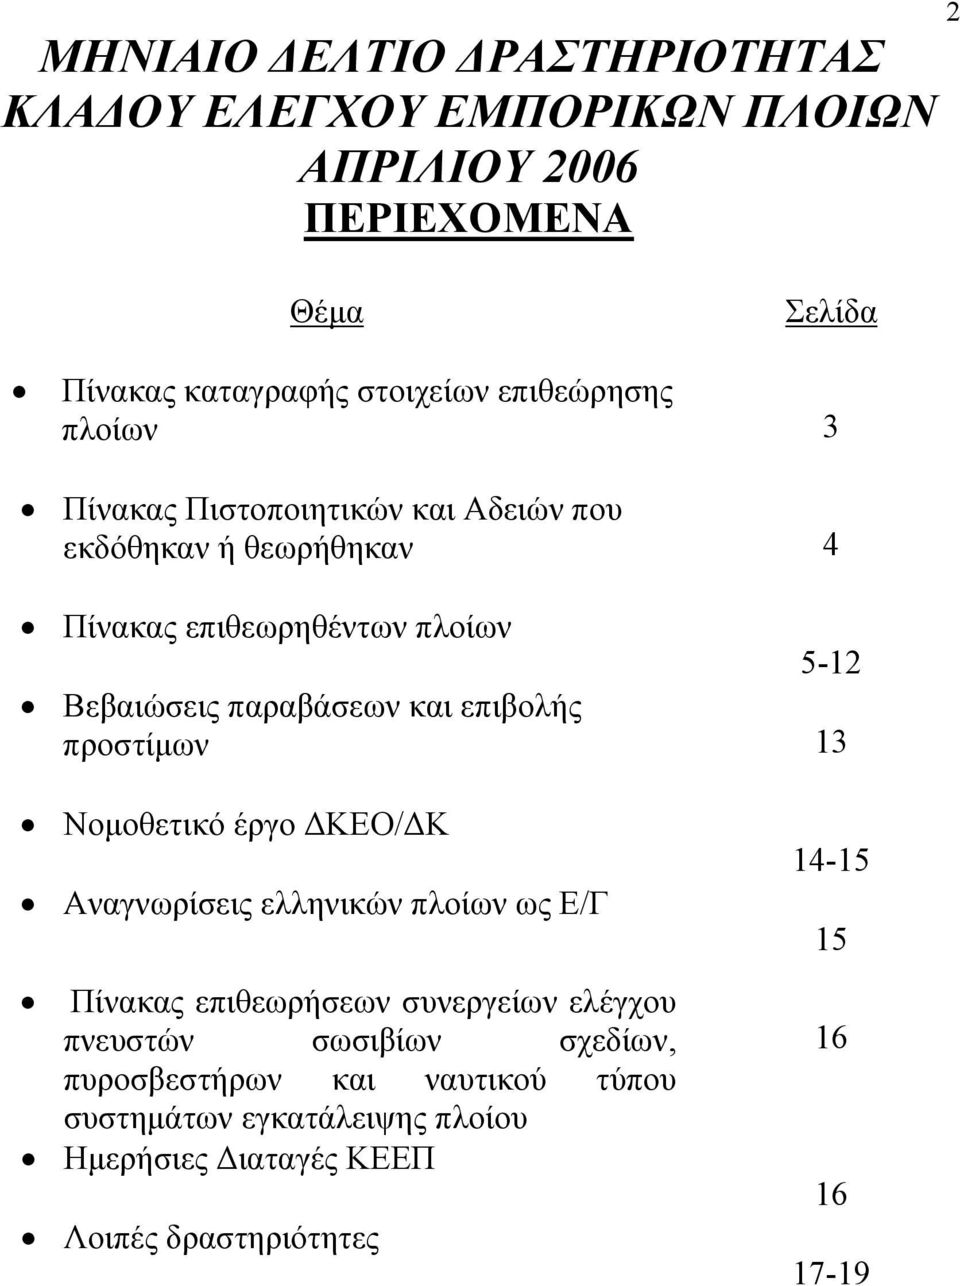 παραβάσεων και επιβολής προστίμων 13 Νομοθετικό έργο ΔΚΕΟ/ΔΚ Αναγνωρίσεις ελληνικών πλοίων ως Ε/Γ Πίνακας επιθεωρήσεων συνεργείων ελέγχου